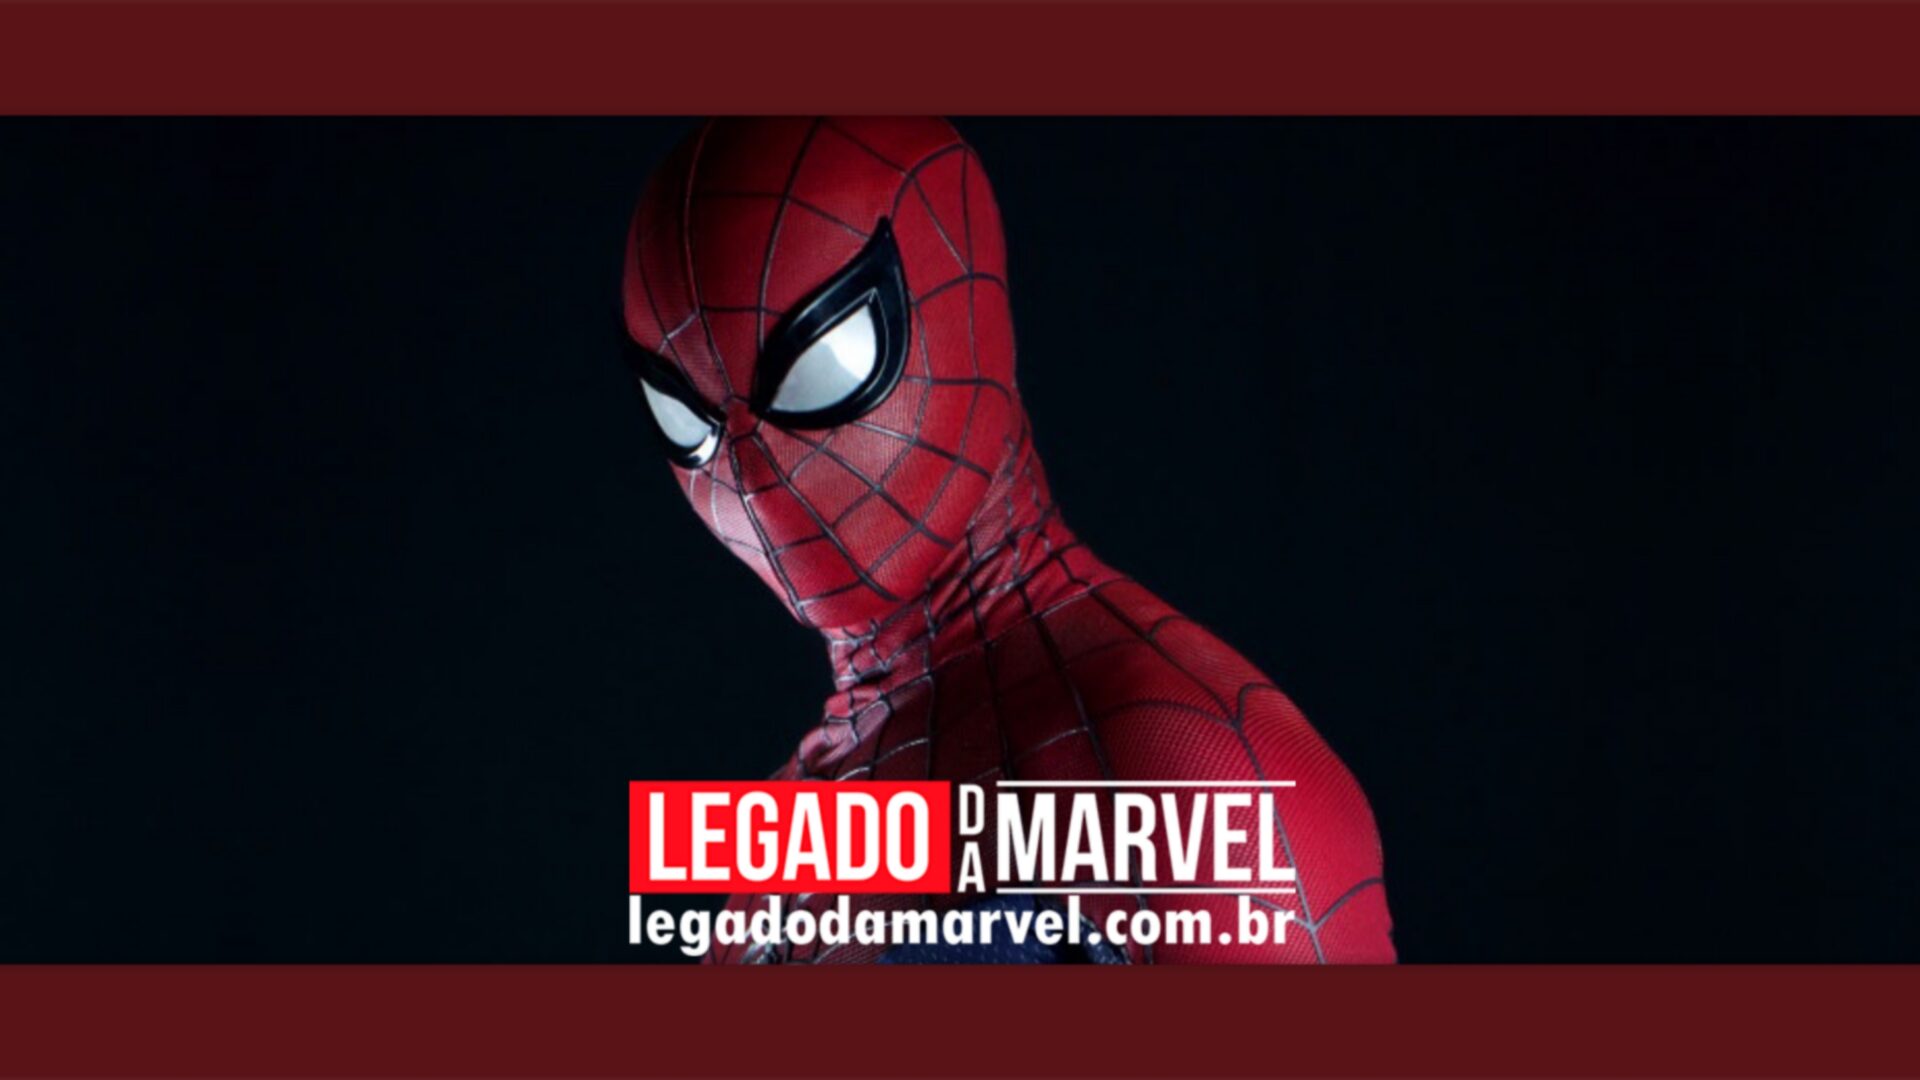 Spider-Man Lotus: Fanfilm do Homem-Aranha ganha novo teaser incrível